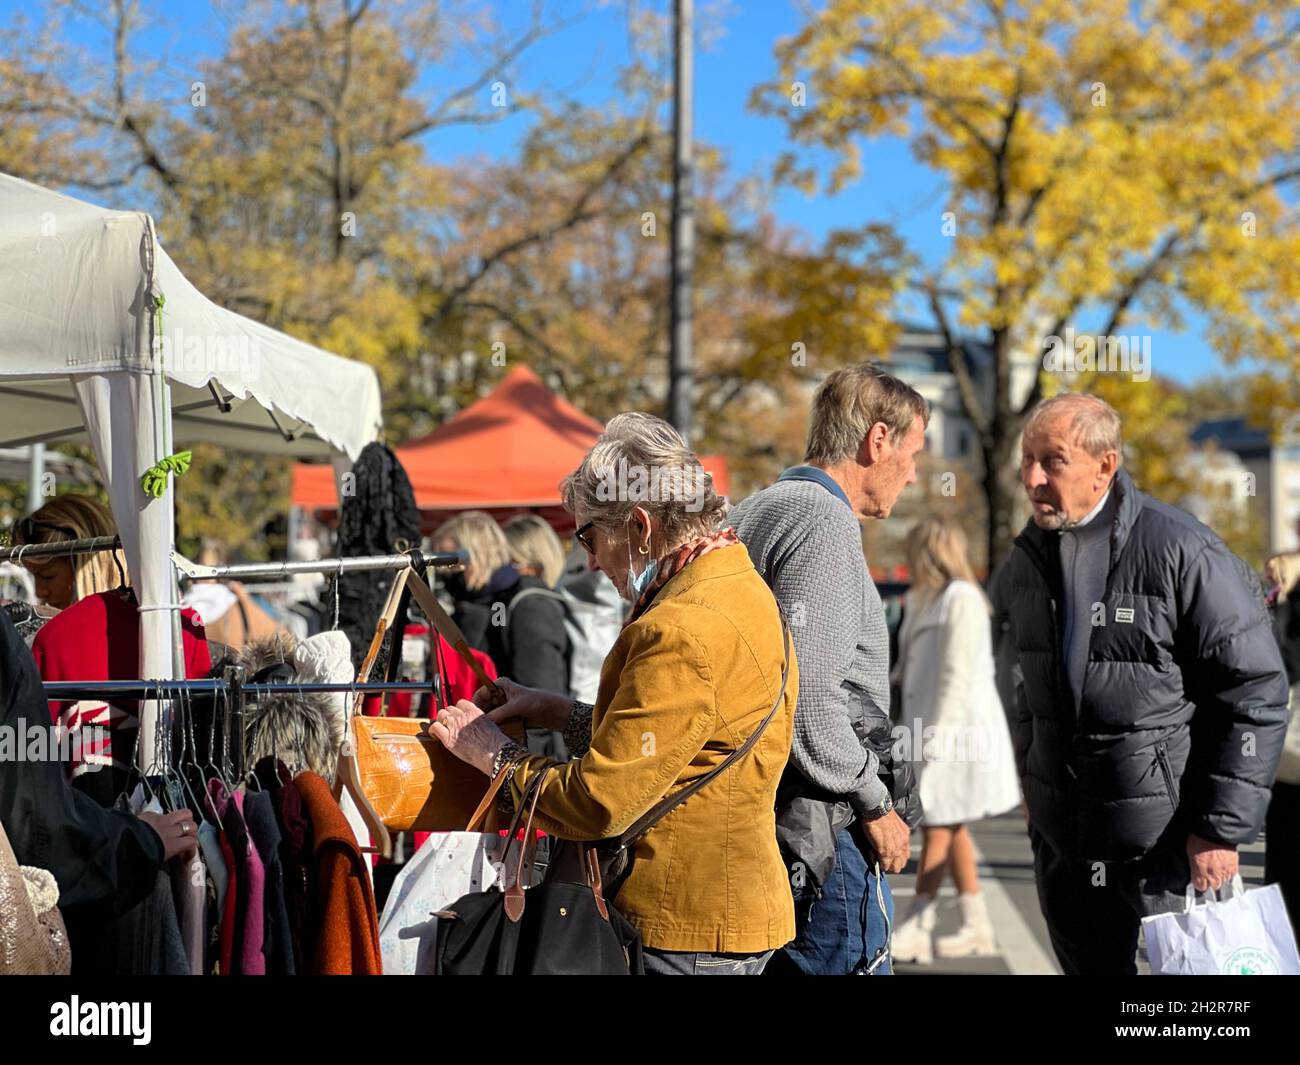 Persone al mercato delle pulci di Zurigo il sabato di ottobre. Una donna sta ispezionando una borsa e due uomini stanno parlando insieme. Bancarelle di polipi e mercati. Foto Stock